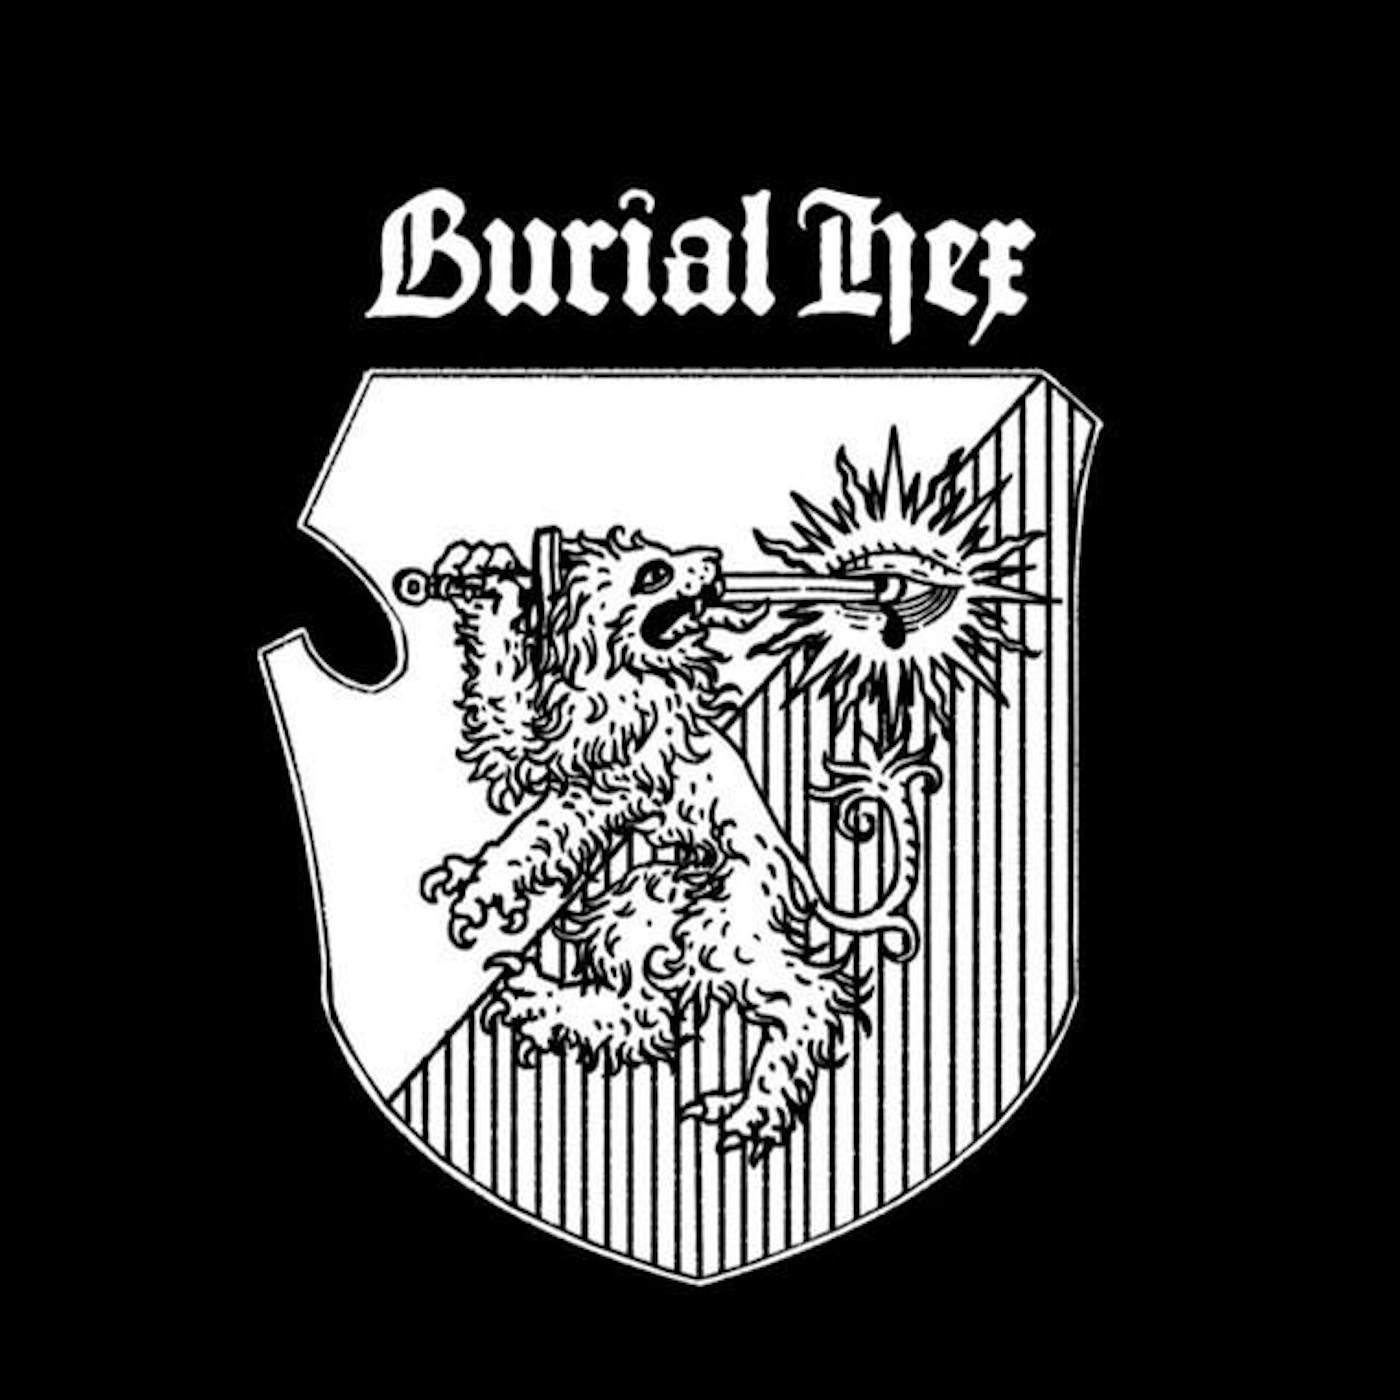 Burial Hex